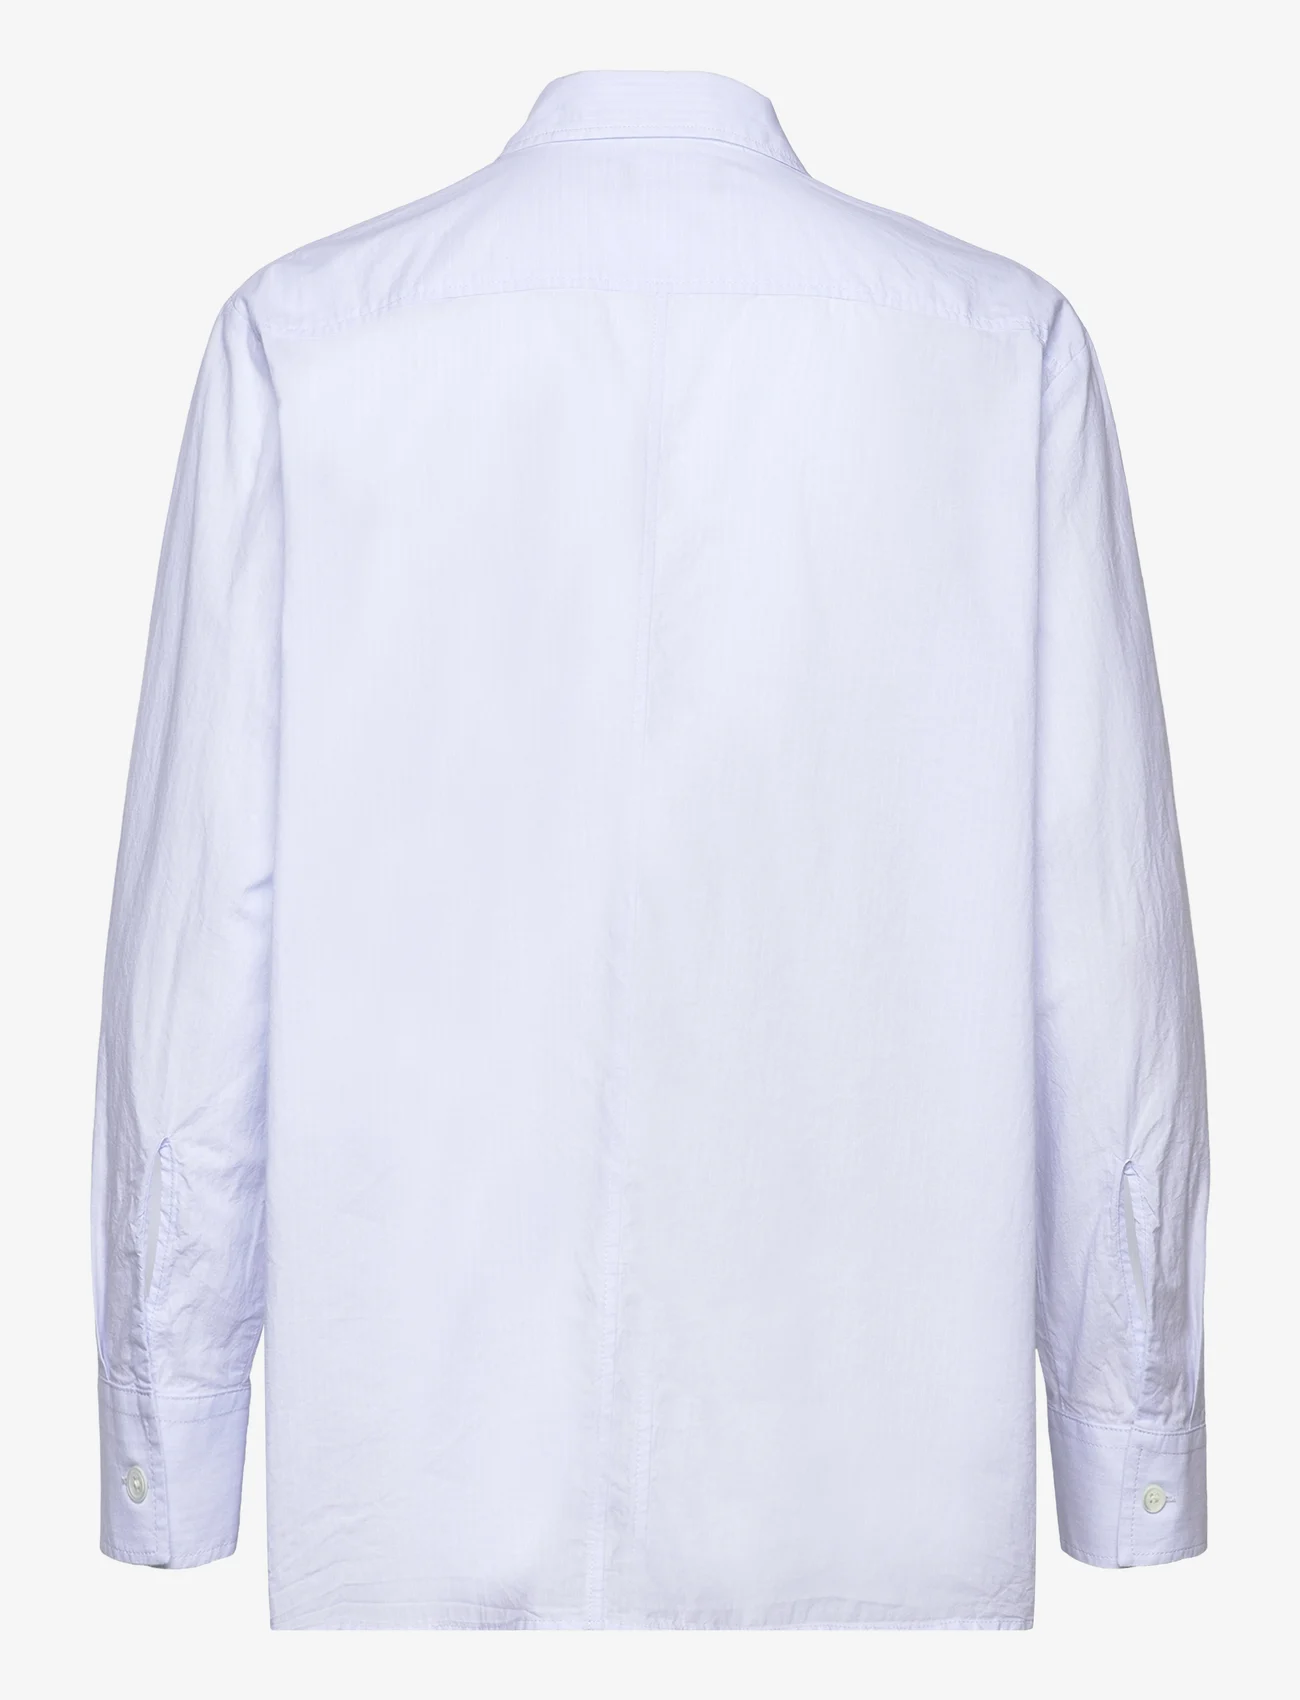 Hope - Boxy Shirt - langärmlige hemden - light blue stripe - 1